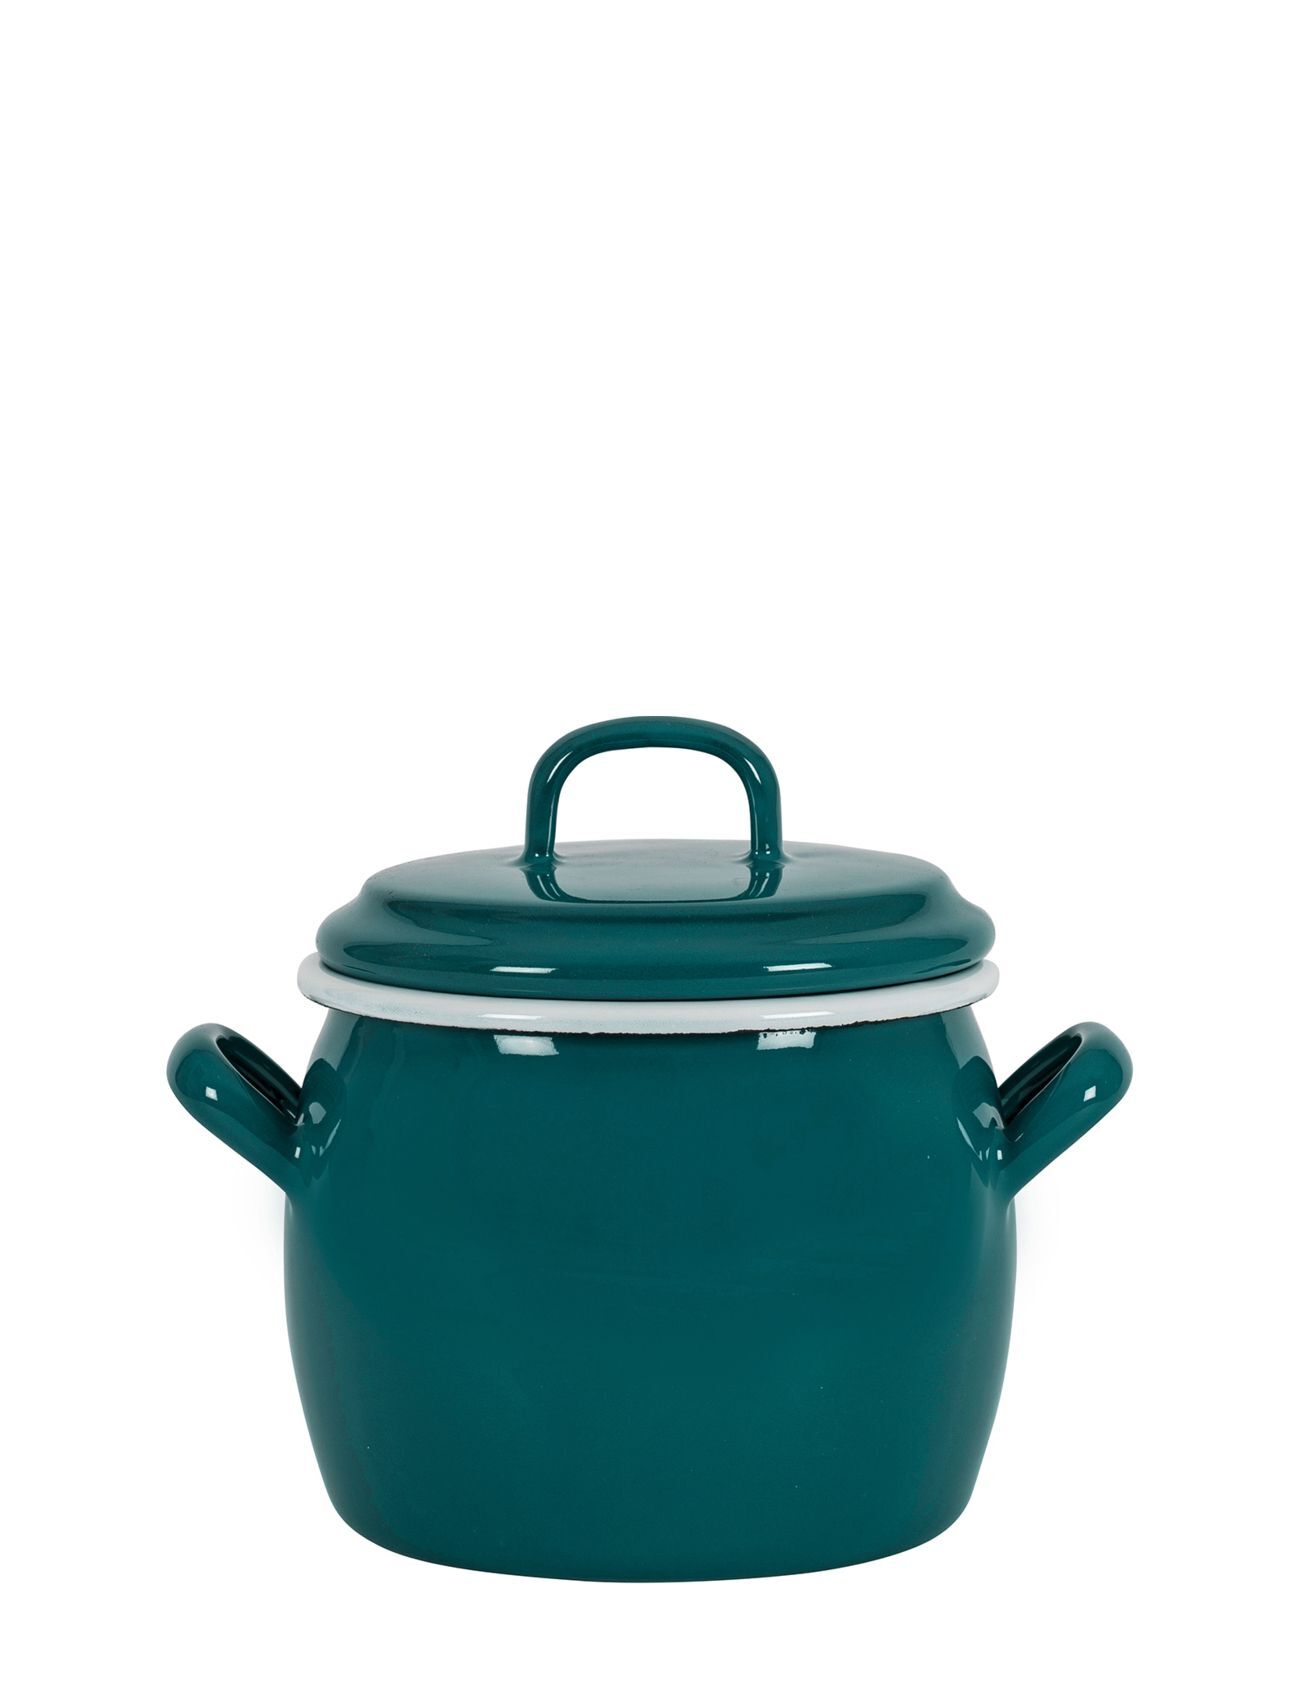 Kockums Jernverk Bellied Pot With Lid 0,7 L Home Kitchen Pots & Pans Saucepans Blå Kockums Jernverk